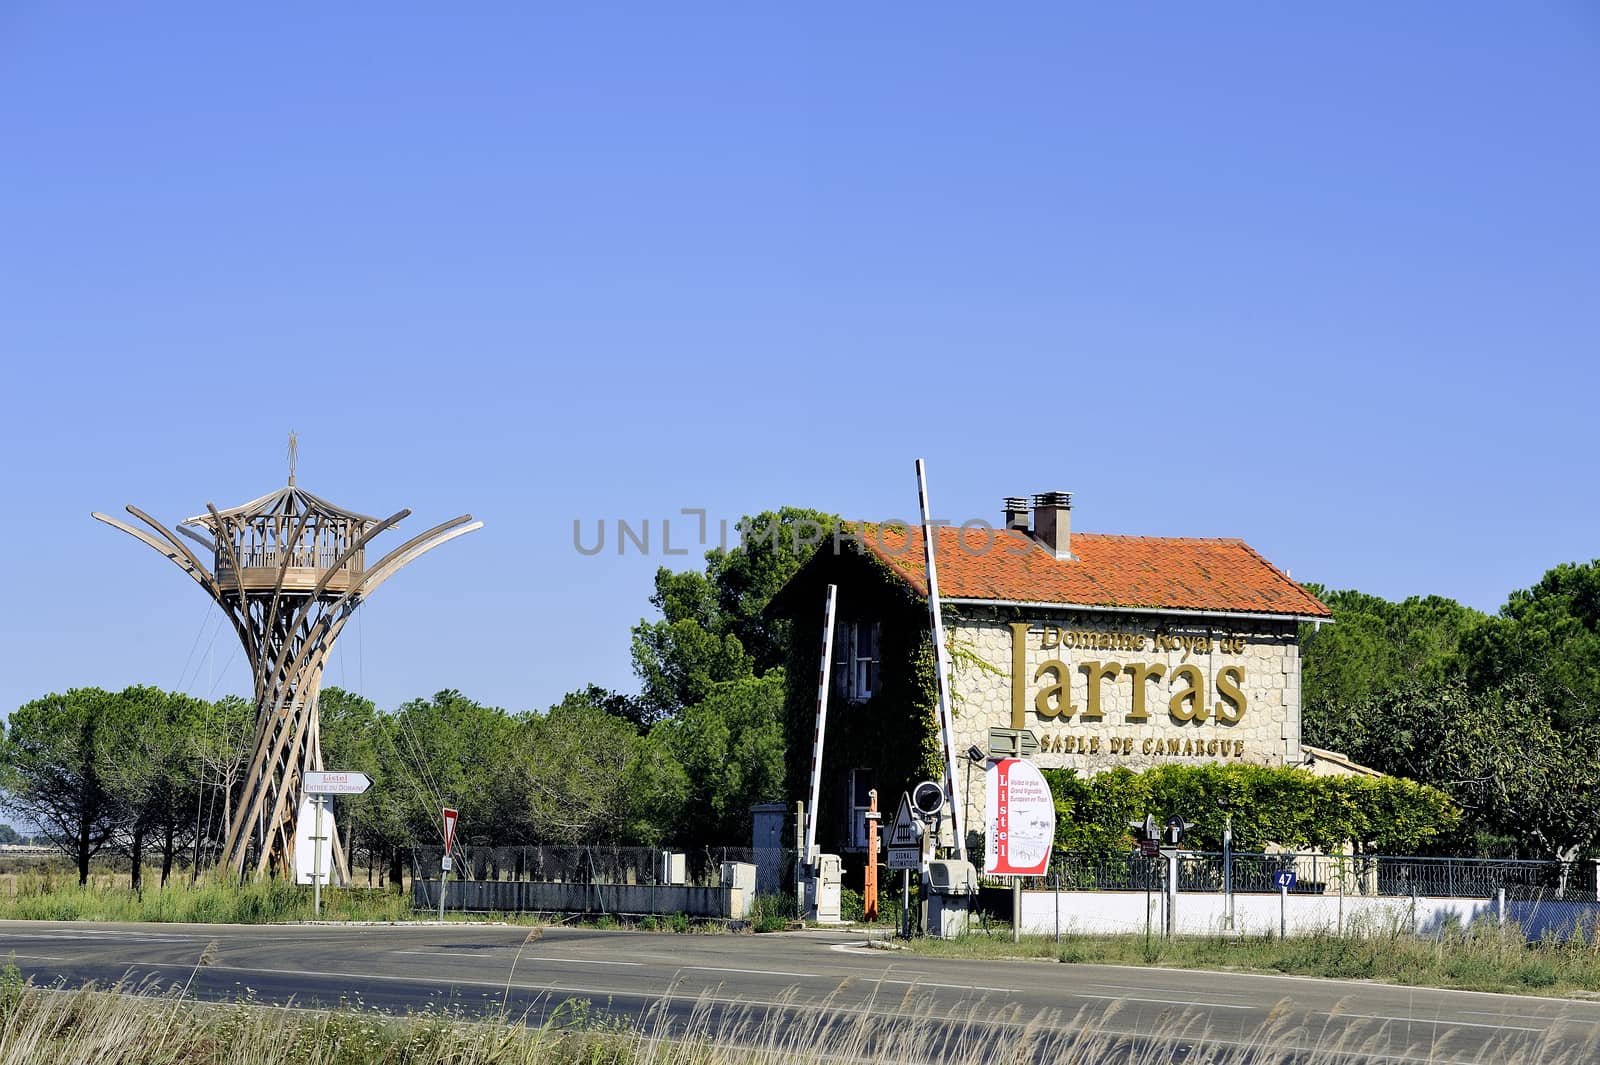 Field Jarras, Listel wine production Aigues-Morte by gillespaire